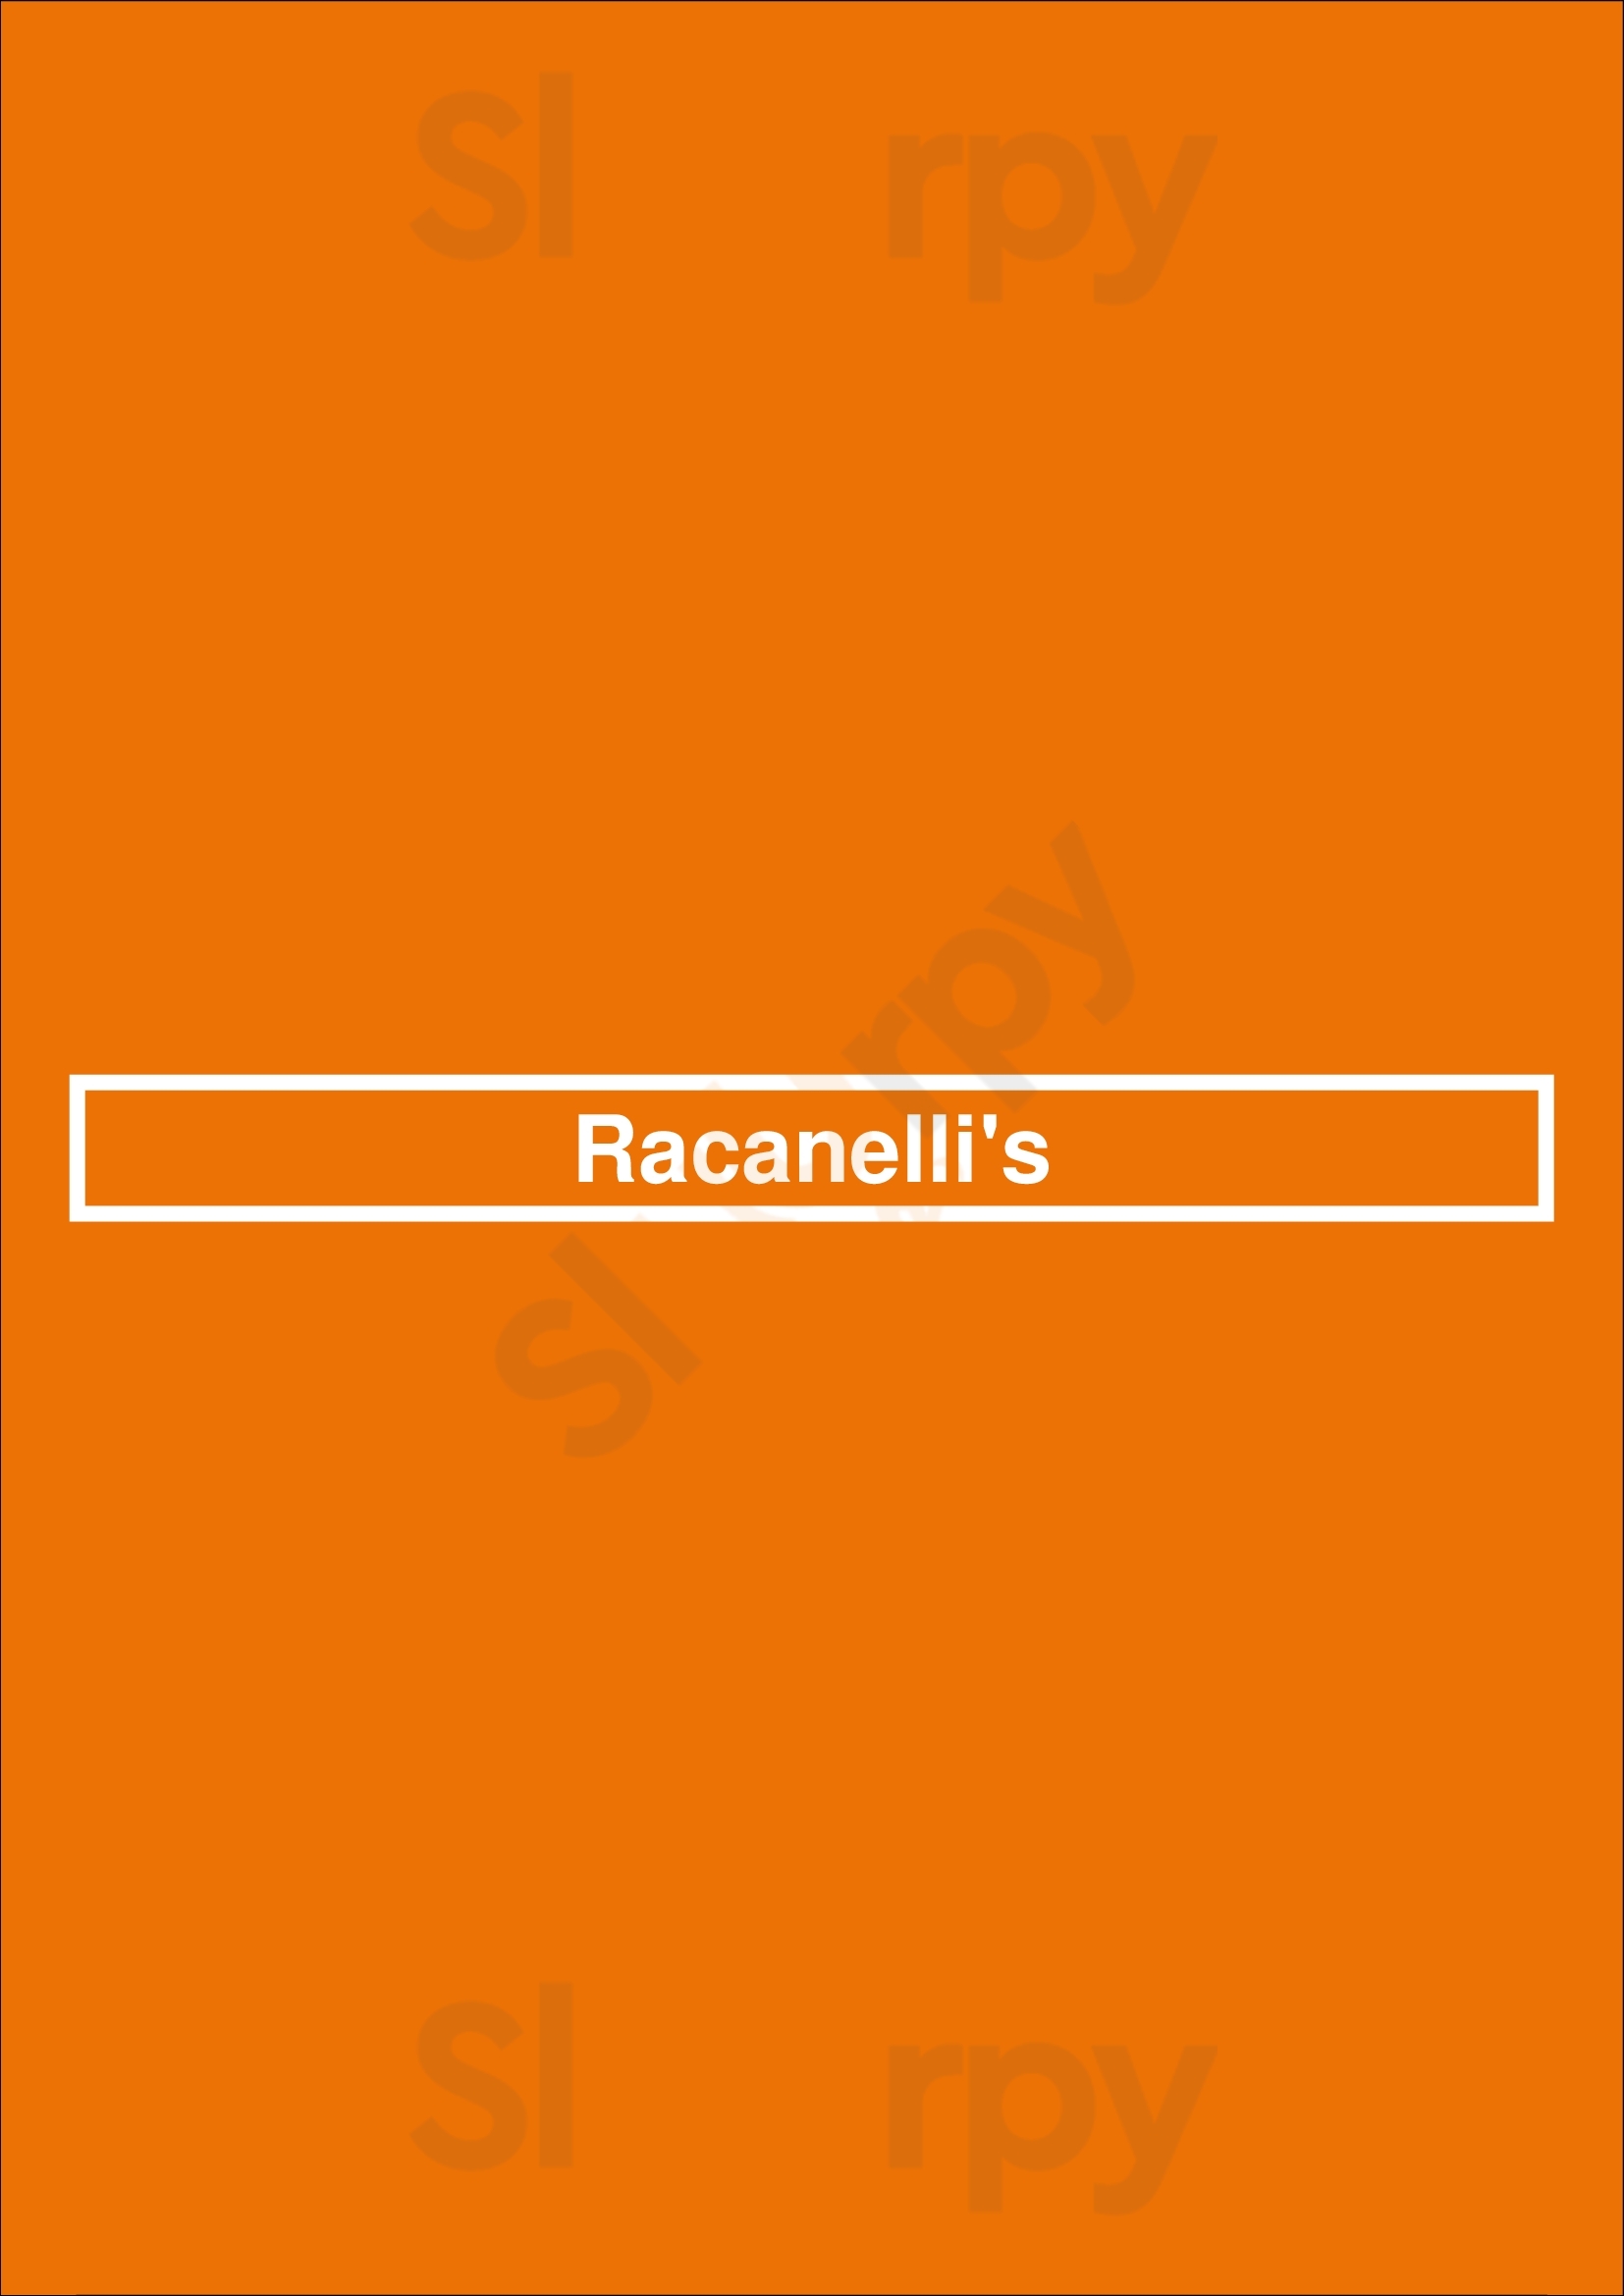 Racanelli's Saint Louis Menu - 1